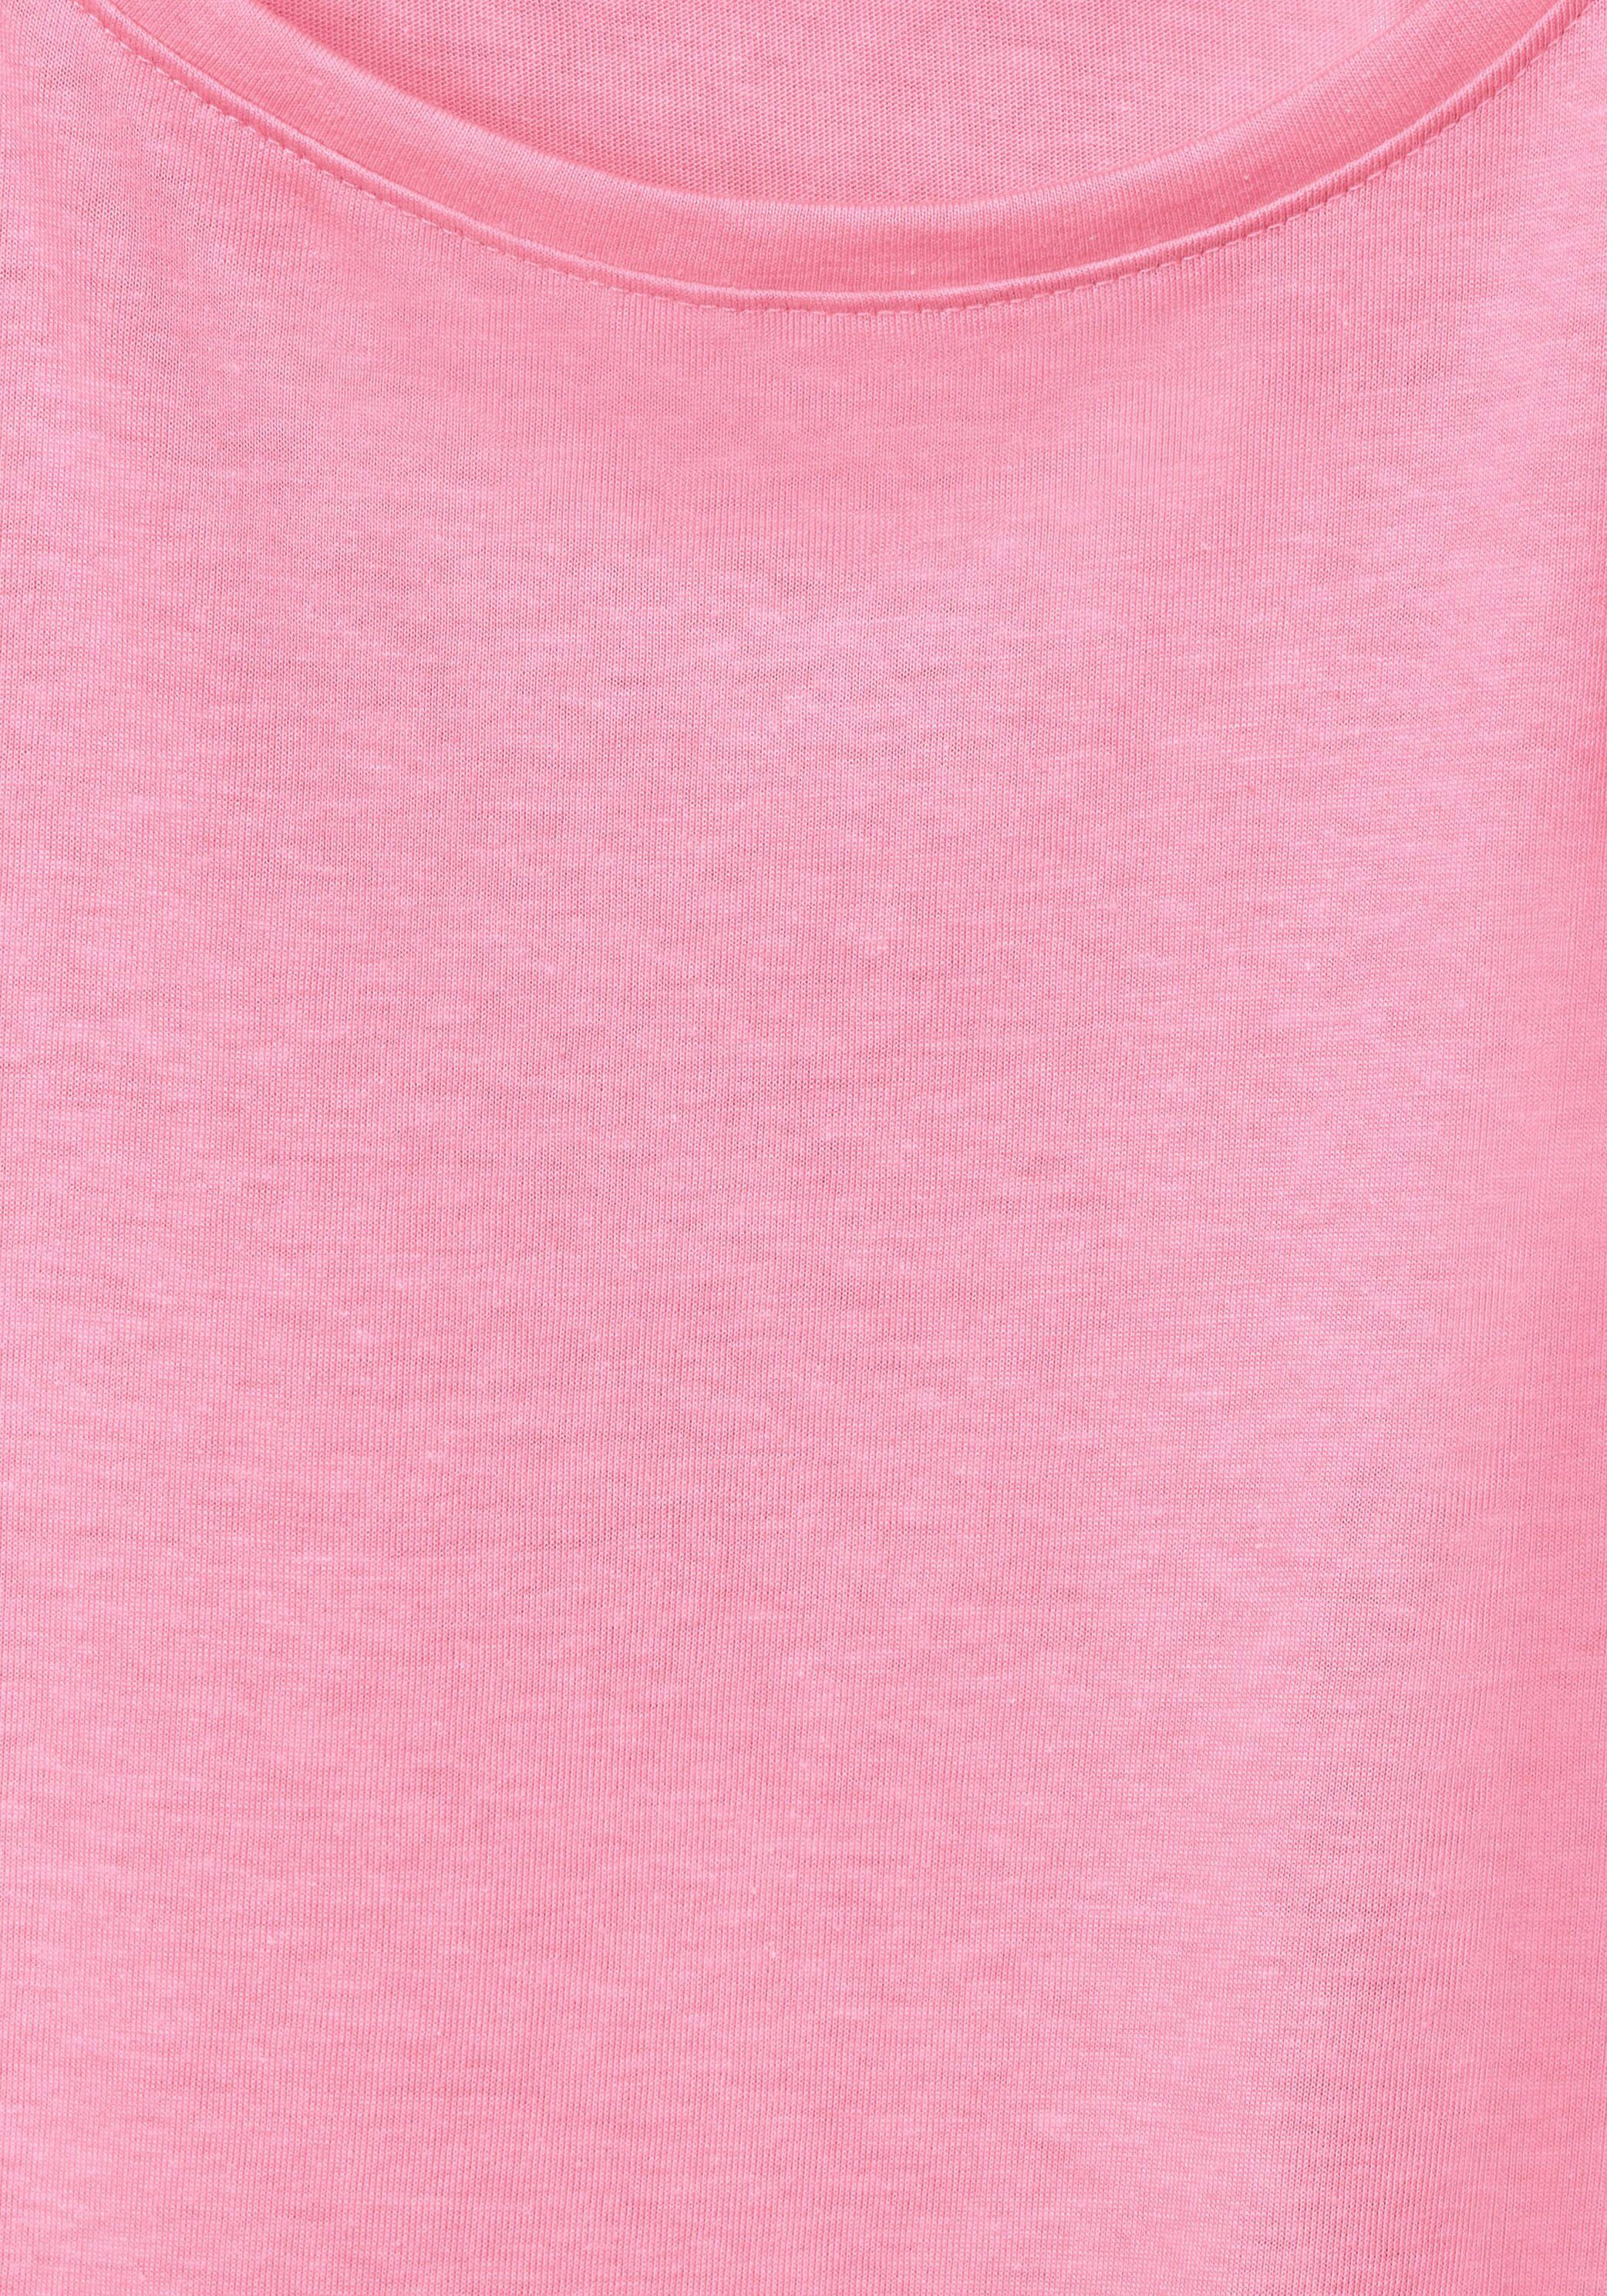 S Cecil NOS Fledermausärmeln Gathering pink soft mit T-Shirt Shoulder